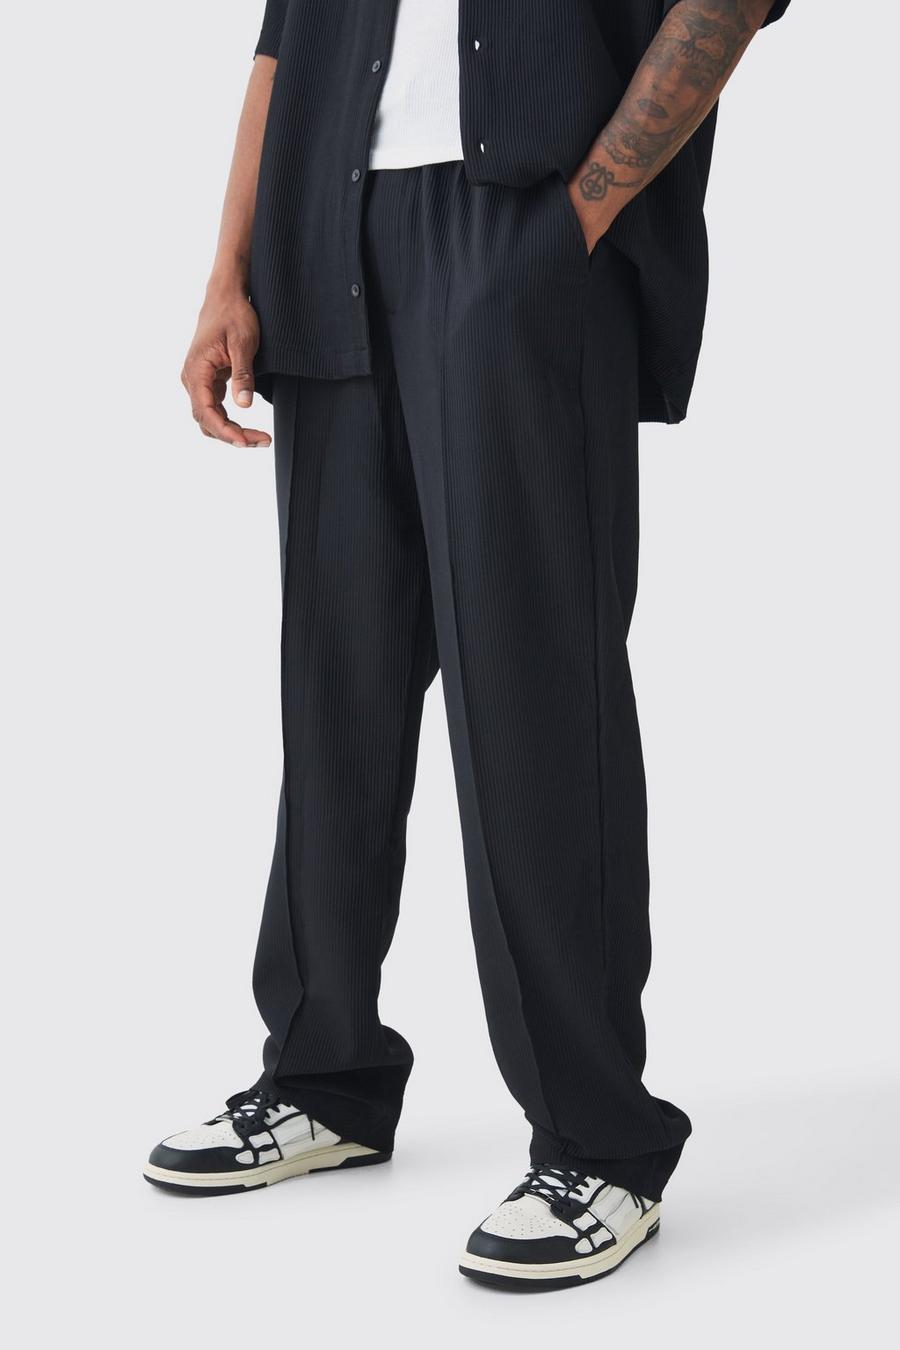 Pantalón Tall holgado plisado con cintura elástica, Black image number 1